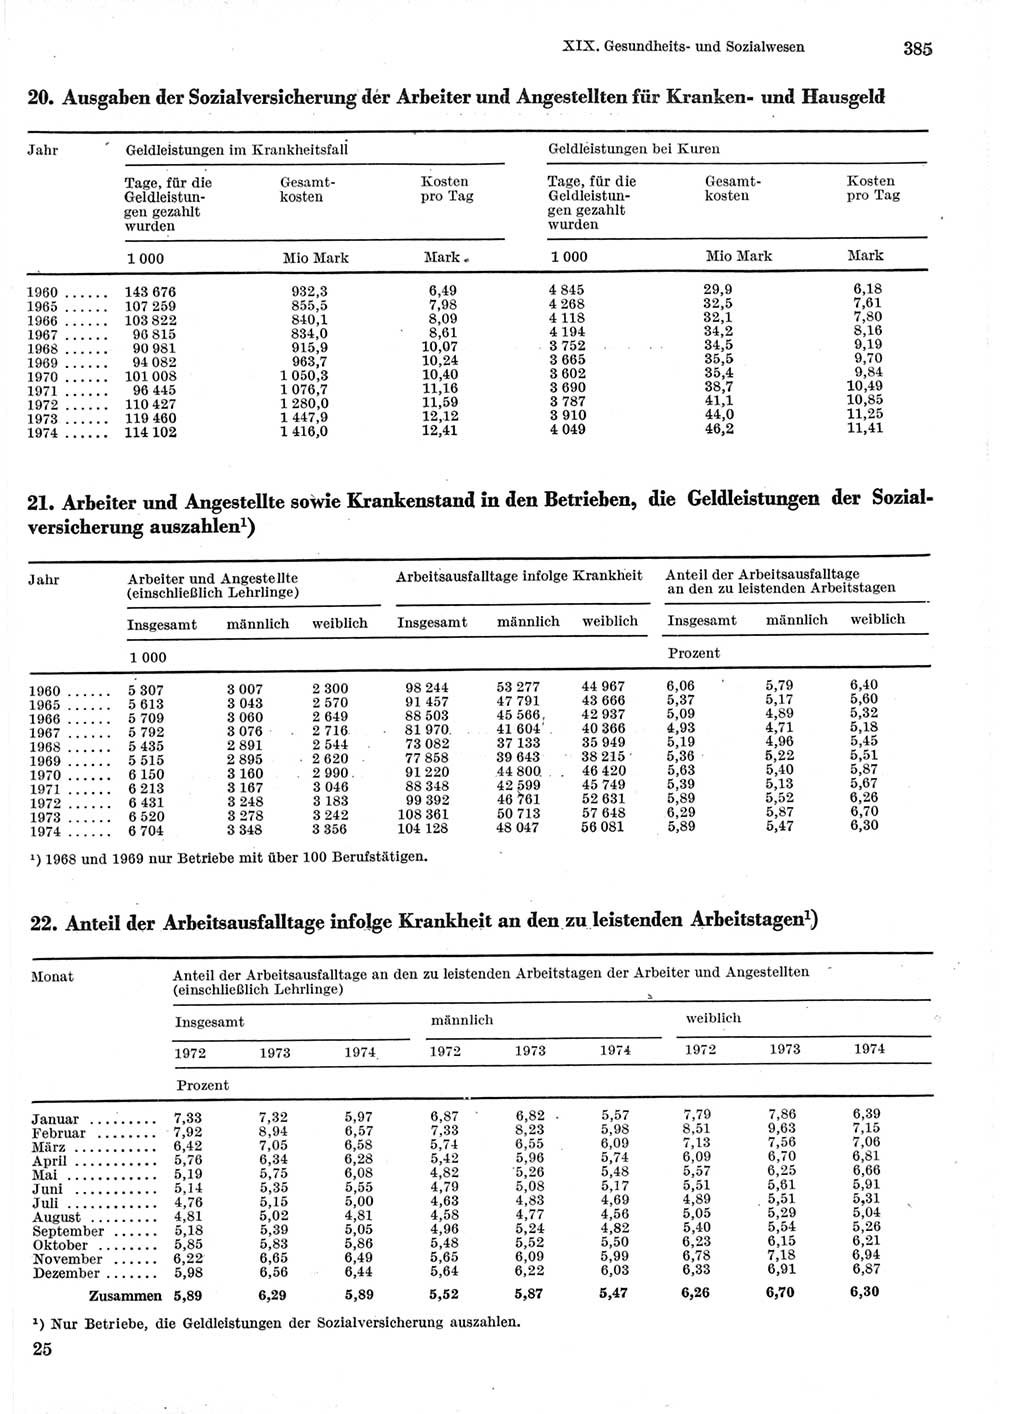 Statistisches Jahrbuch der Deutschen Demokratischen Republik (DDR) 1975, Seite 385 (Stat. Jb. DDR 1975, S. 385)